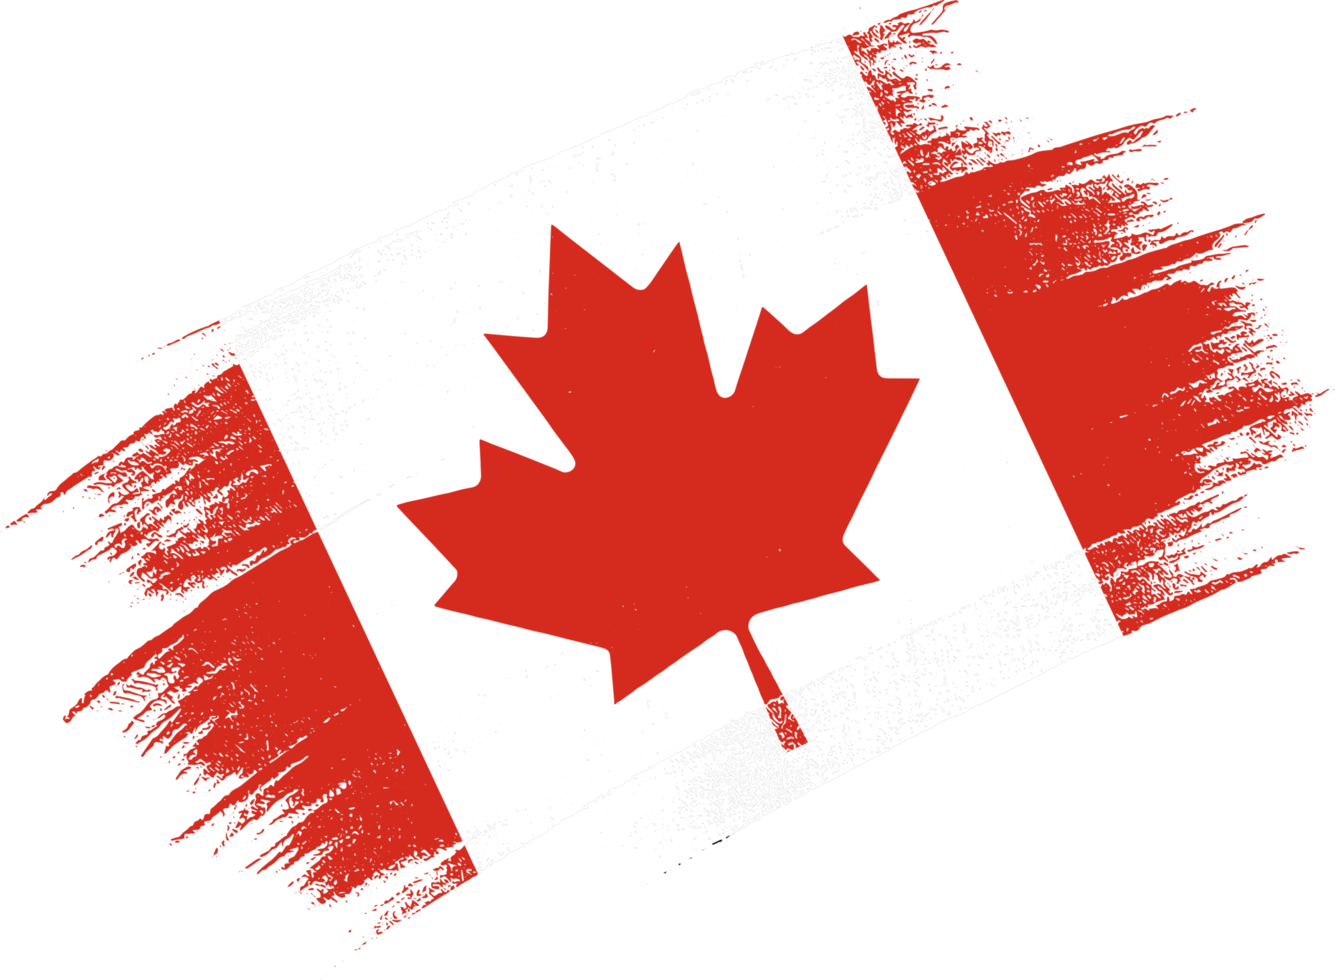 Kanada Flagge mit Bürste Farbe texturiert isoliert auf png oder transparent Hintergrund